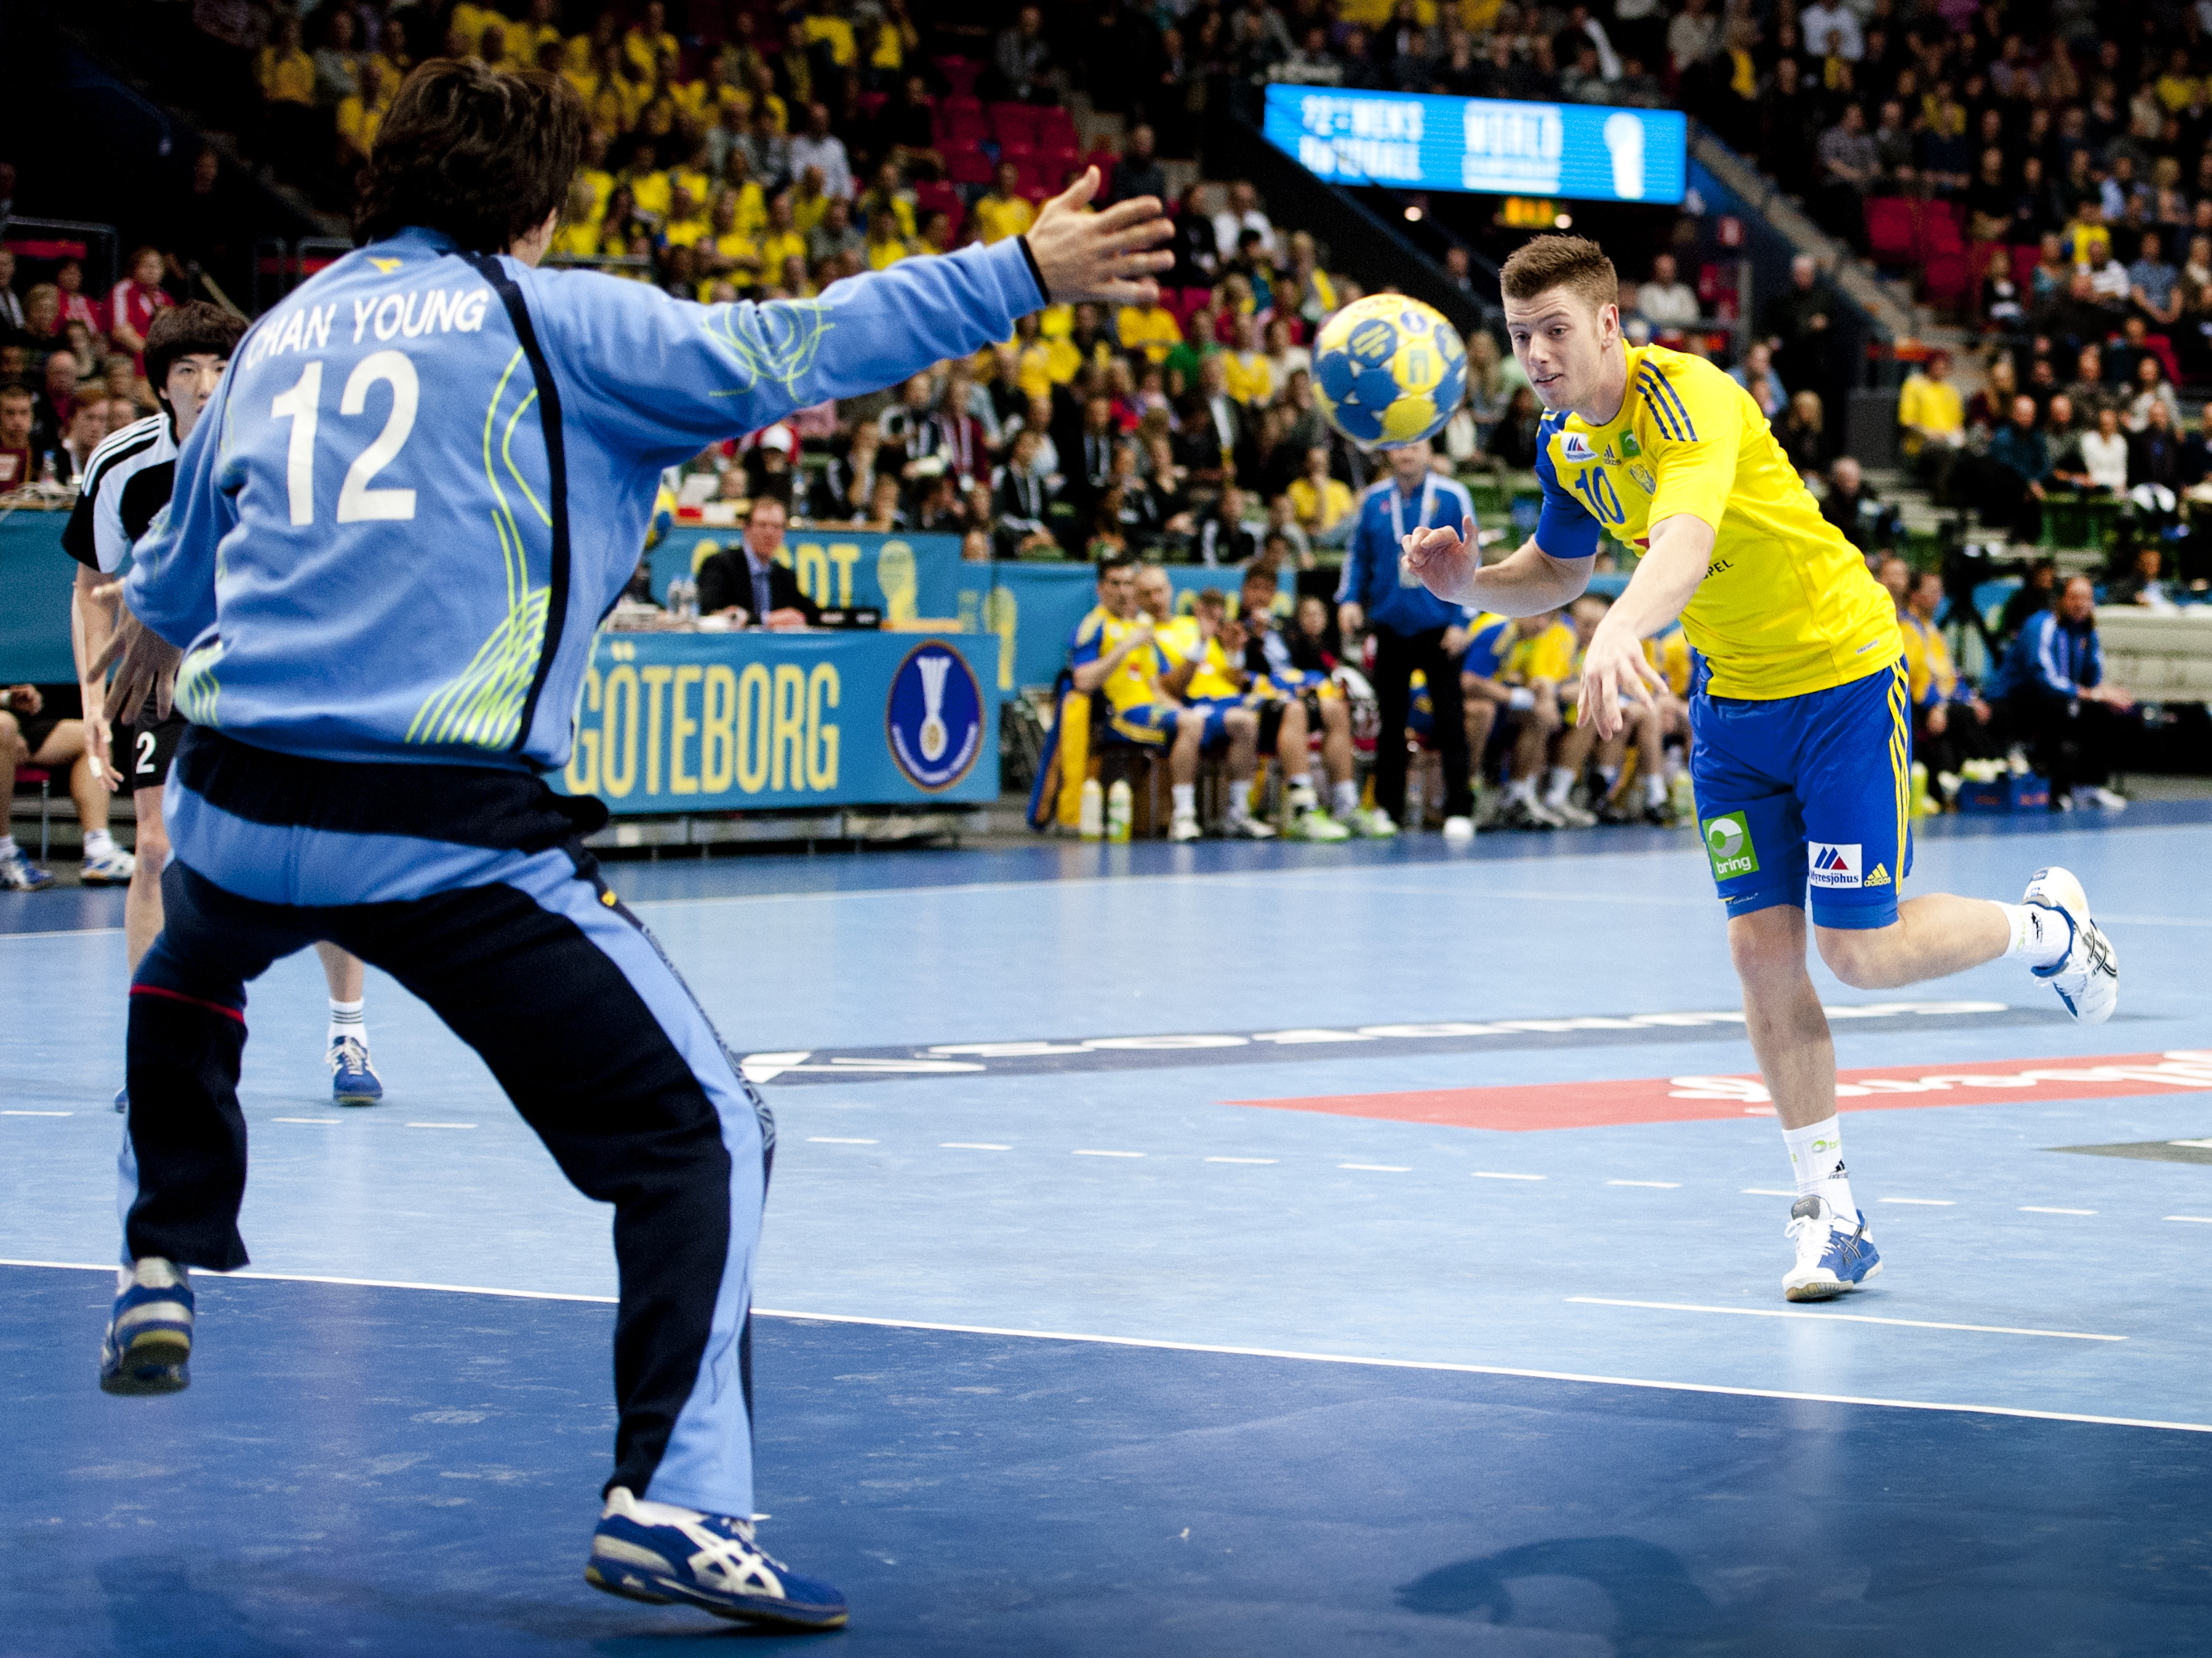 Dalibor Doder spelade riktigt bra under matchen mot Sydkorea. Frågan är nu hur pass långt Sverige kan gå i VM på hemmaplan?